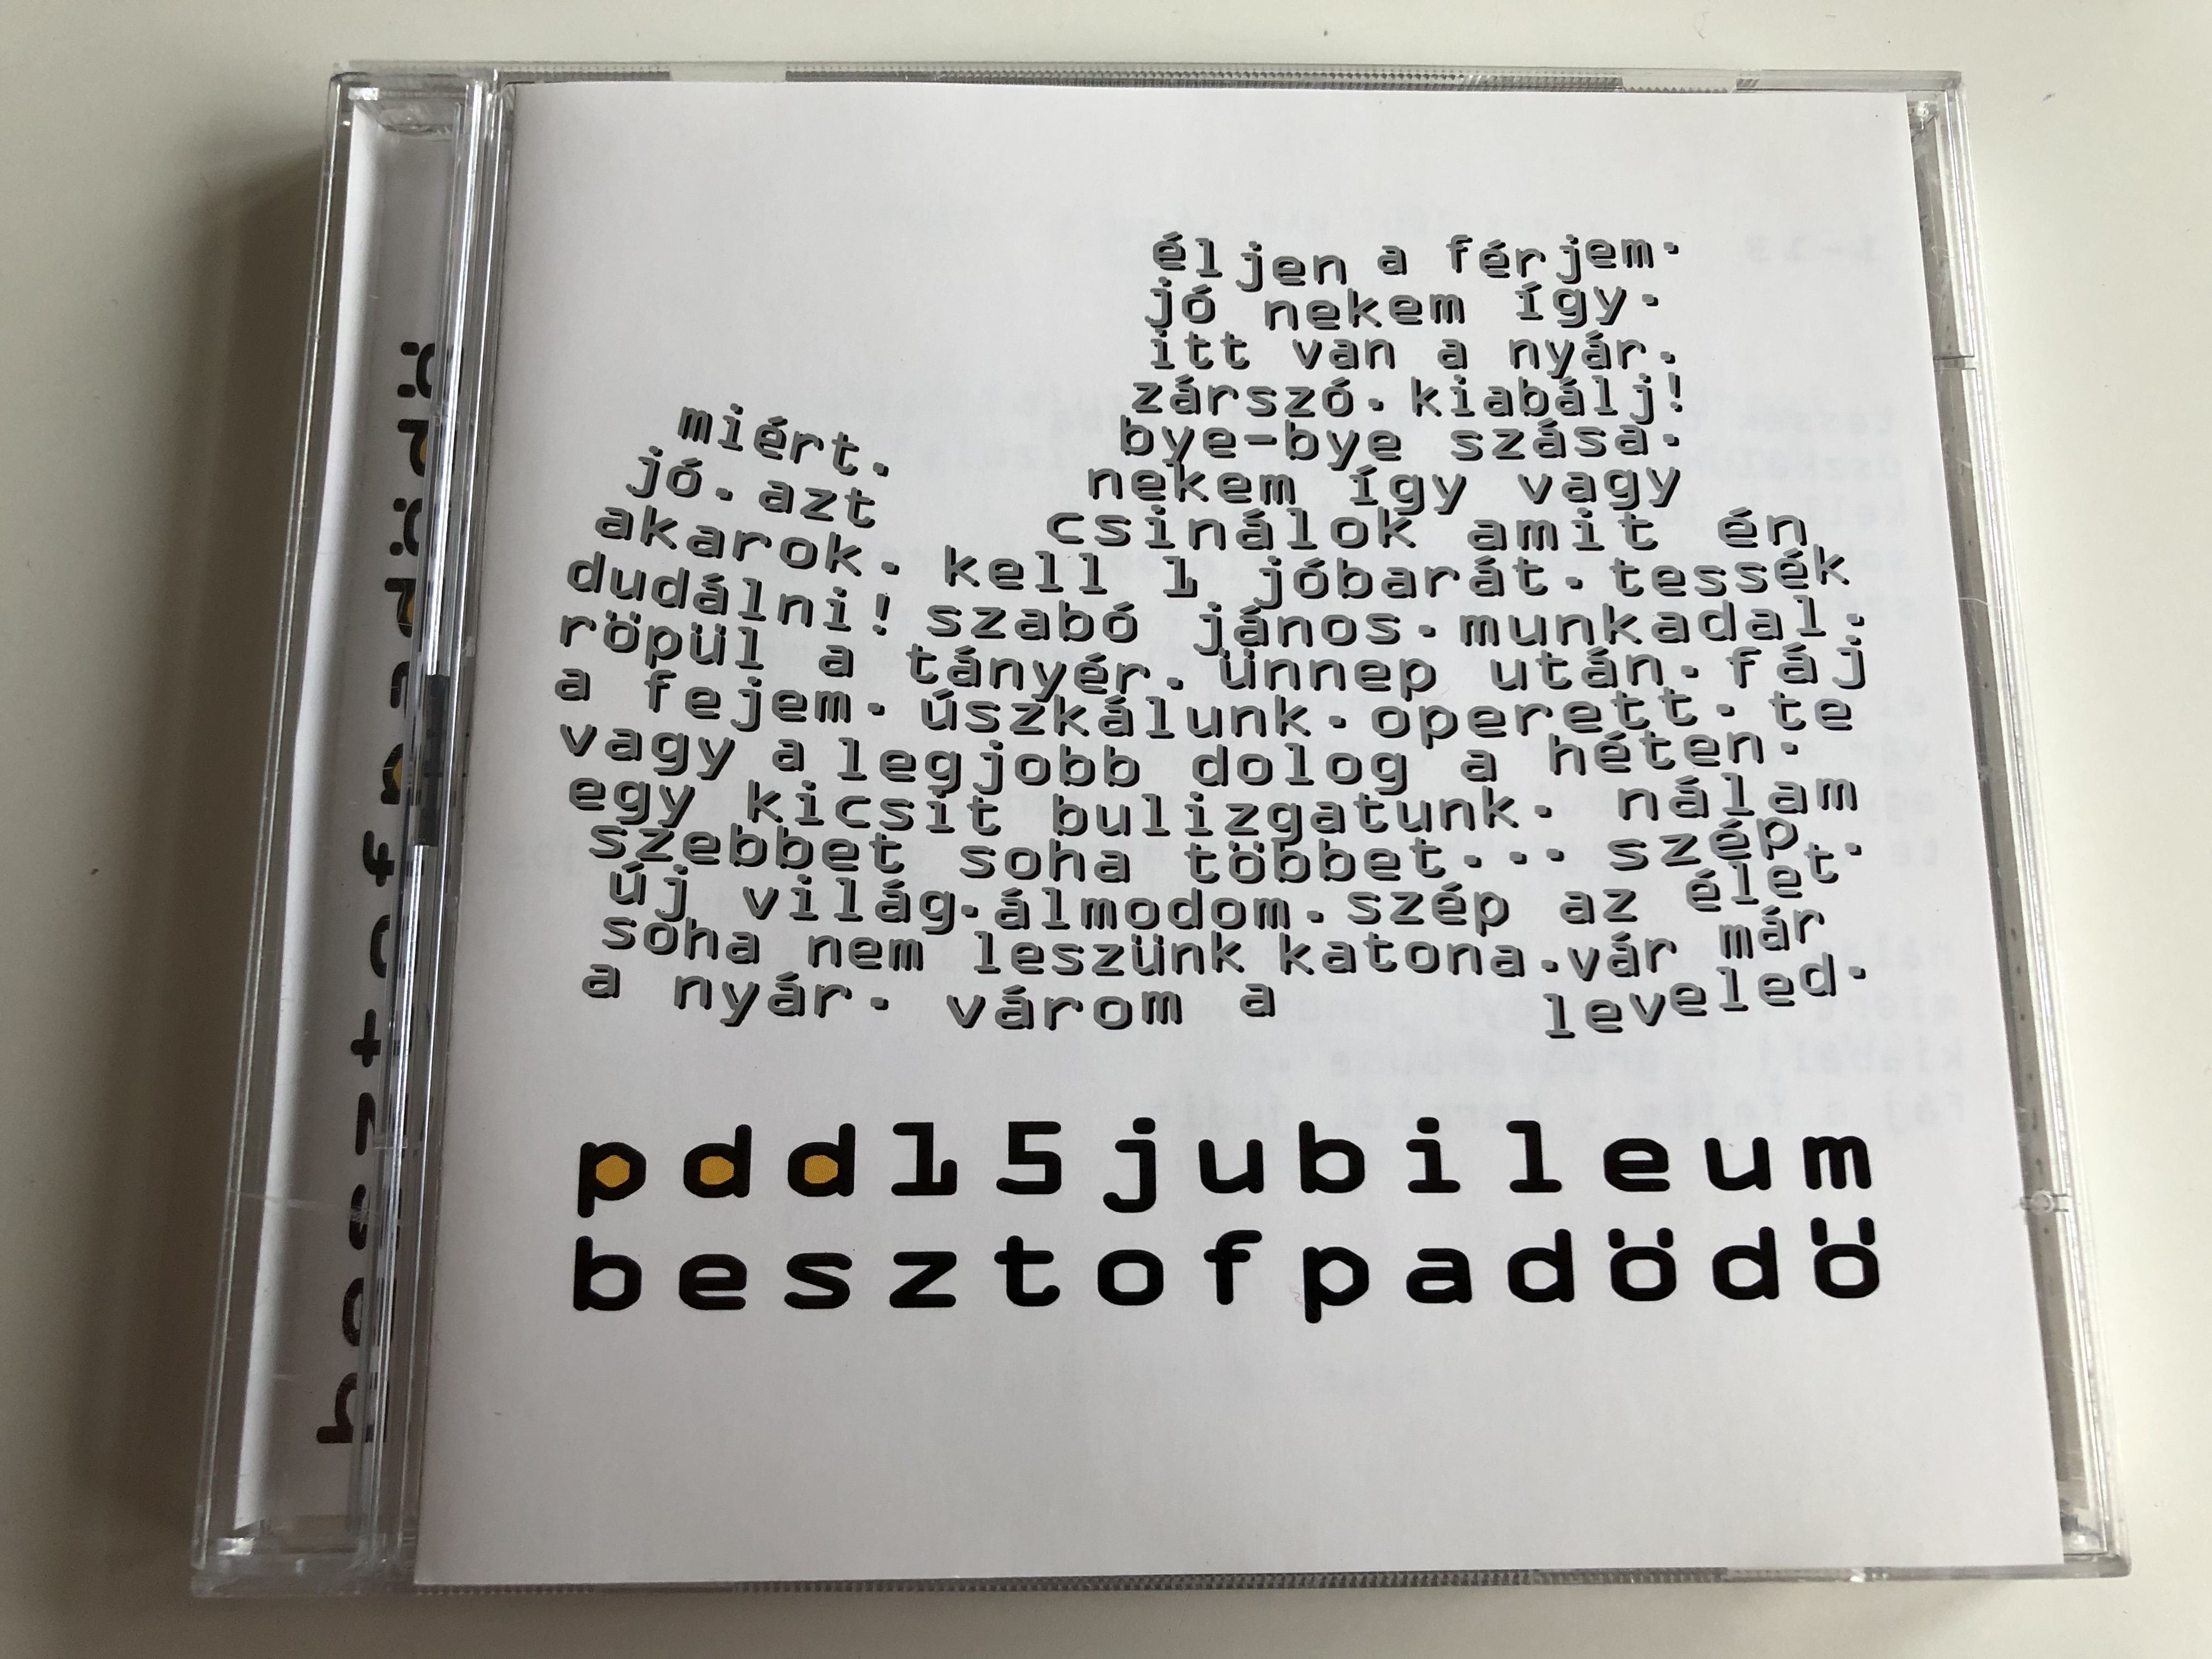 pa-d-d-pdd-15-jubileum-14-27-audio-cd-2003-besztofpad-d-best-of-pa-d-d-1-.jpg